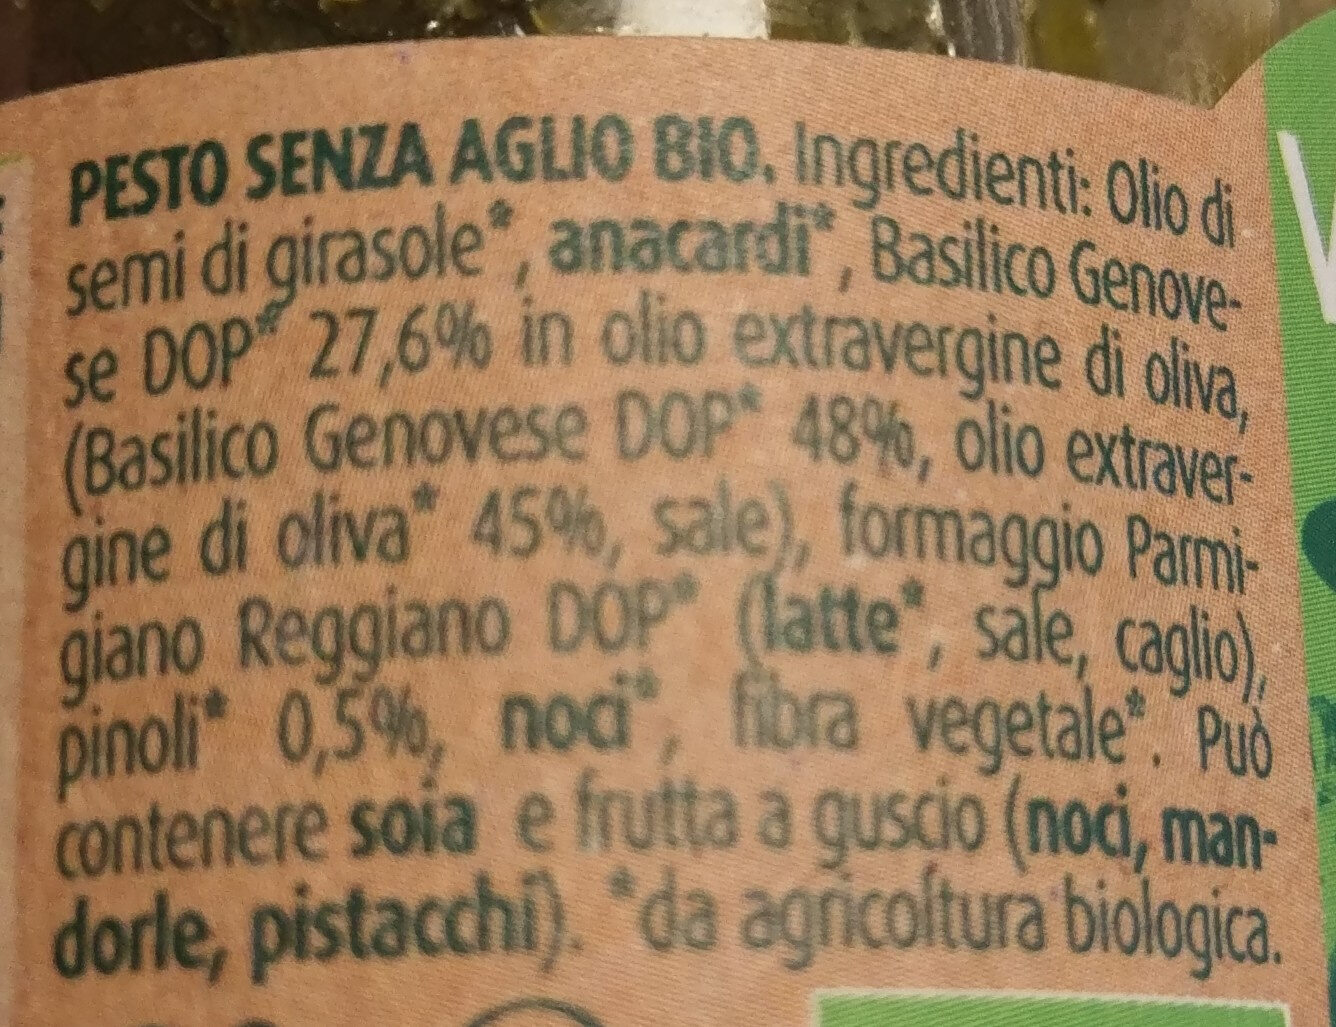 Pesto senza aglio bio - Ingredienti